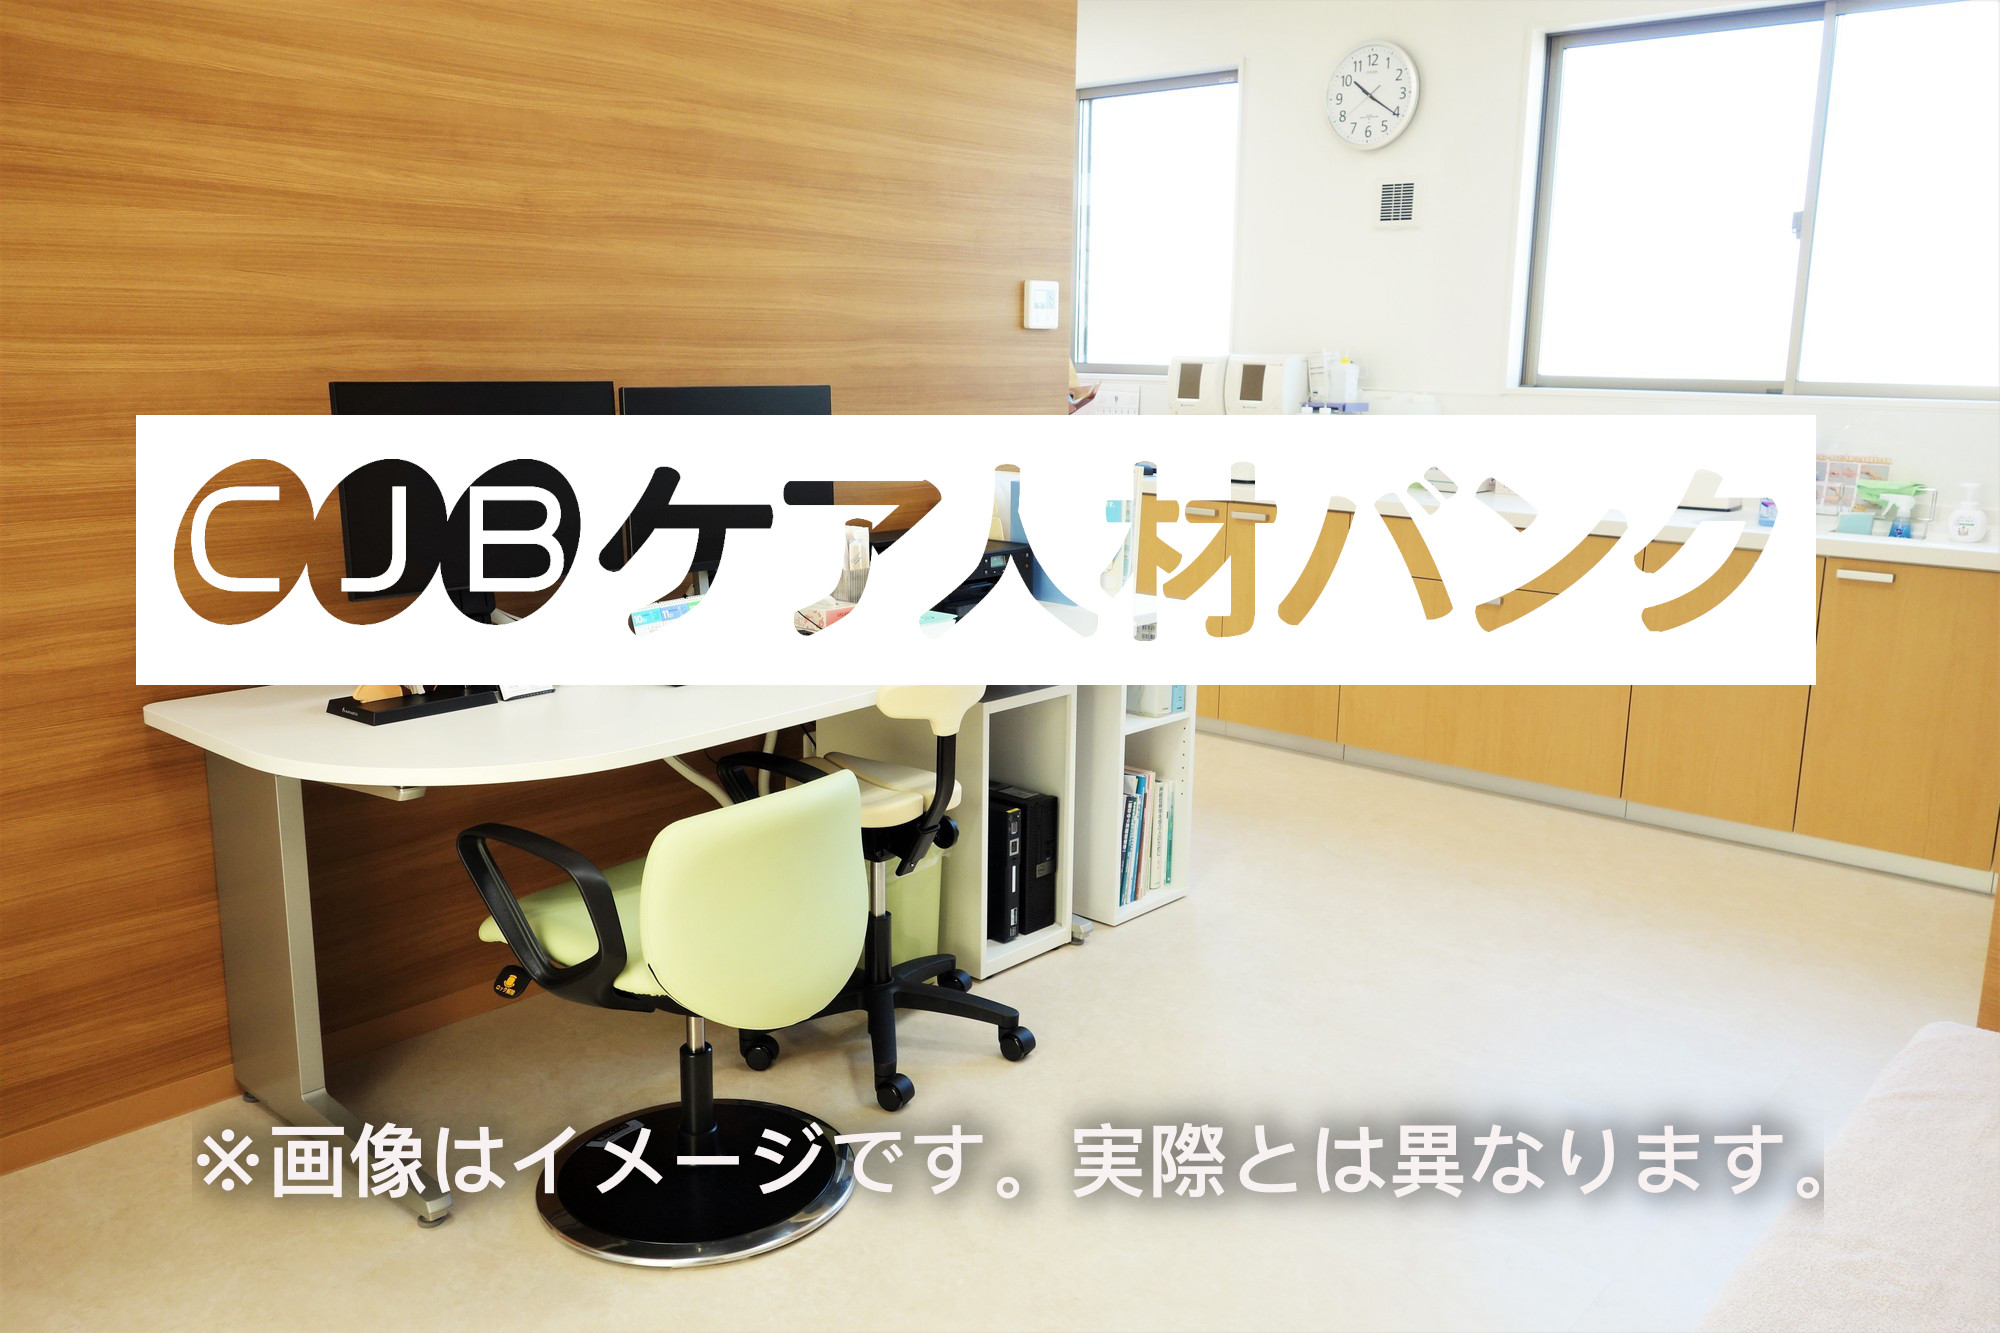 桜十字熊本宇城病院介護医療院 のイメージ画像